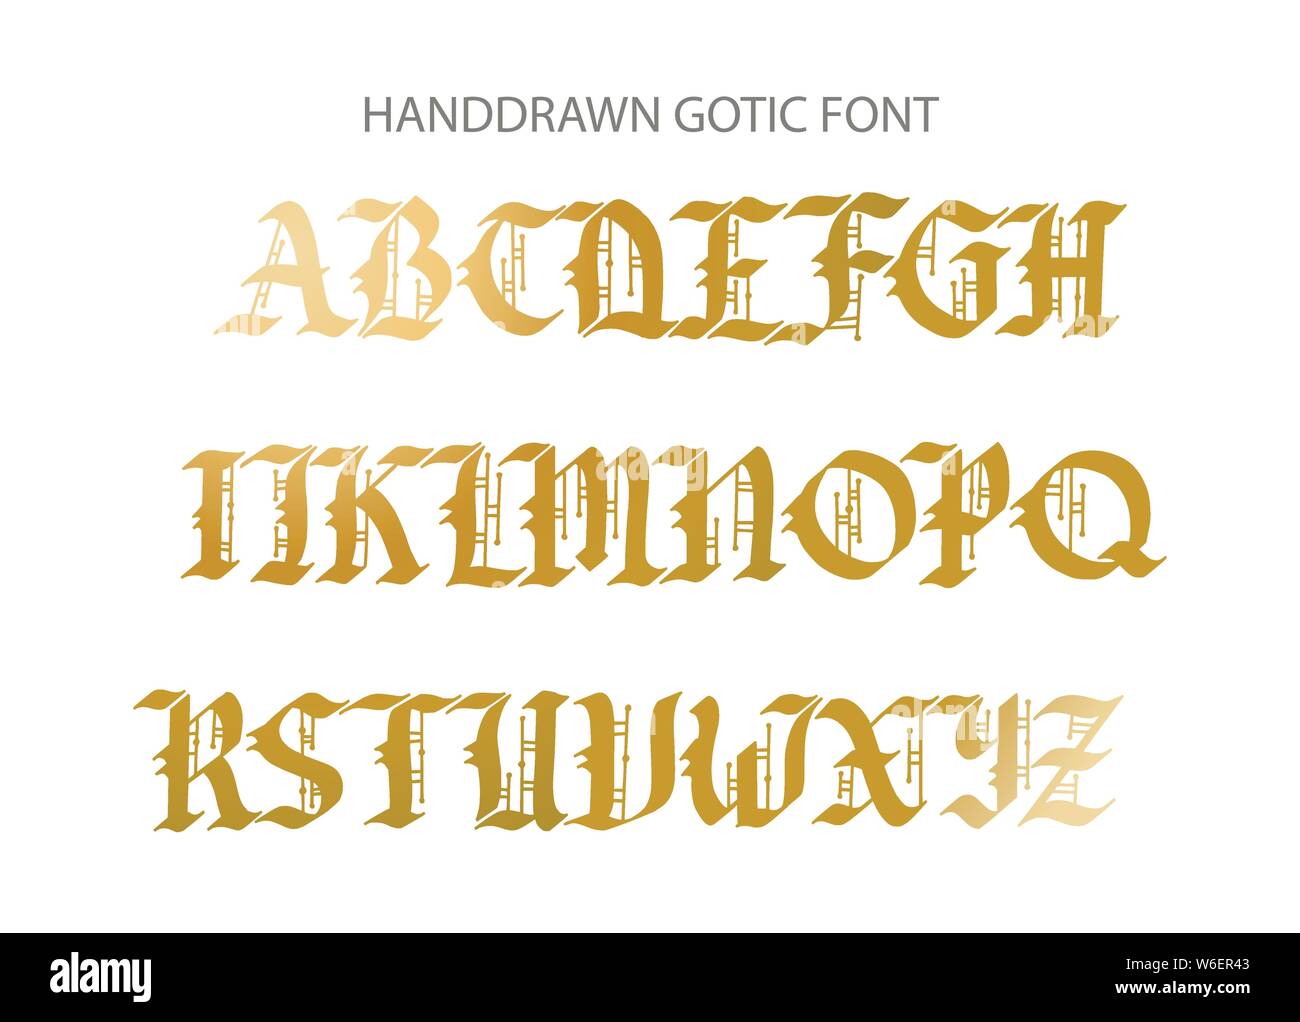 Blackletter gotischen Skript von Hand gezeichnet. Dekorative vintage gestalteten Buchstaben. Stock Vektor